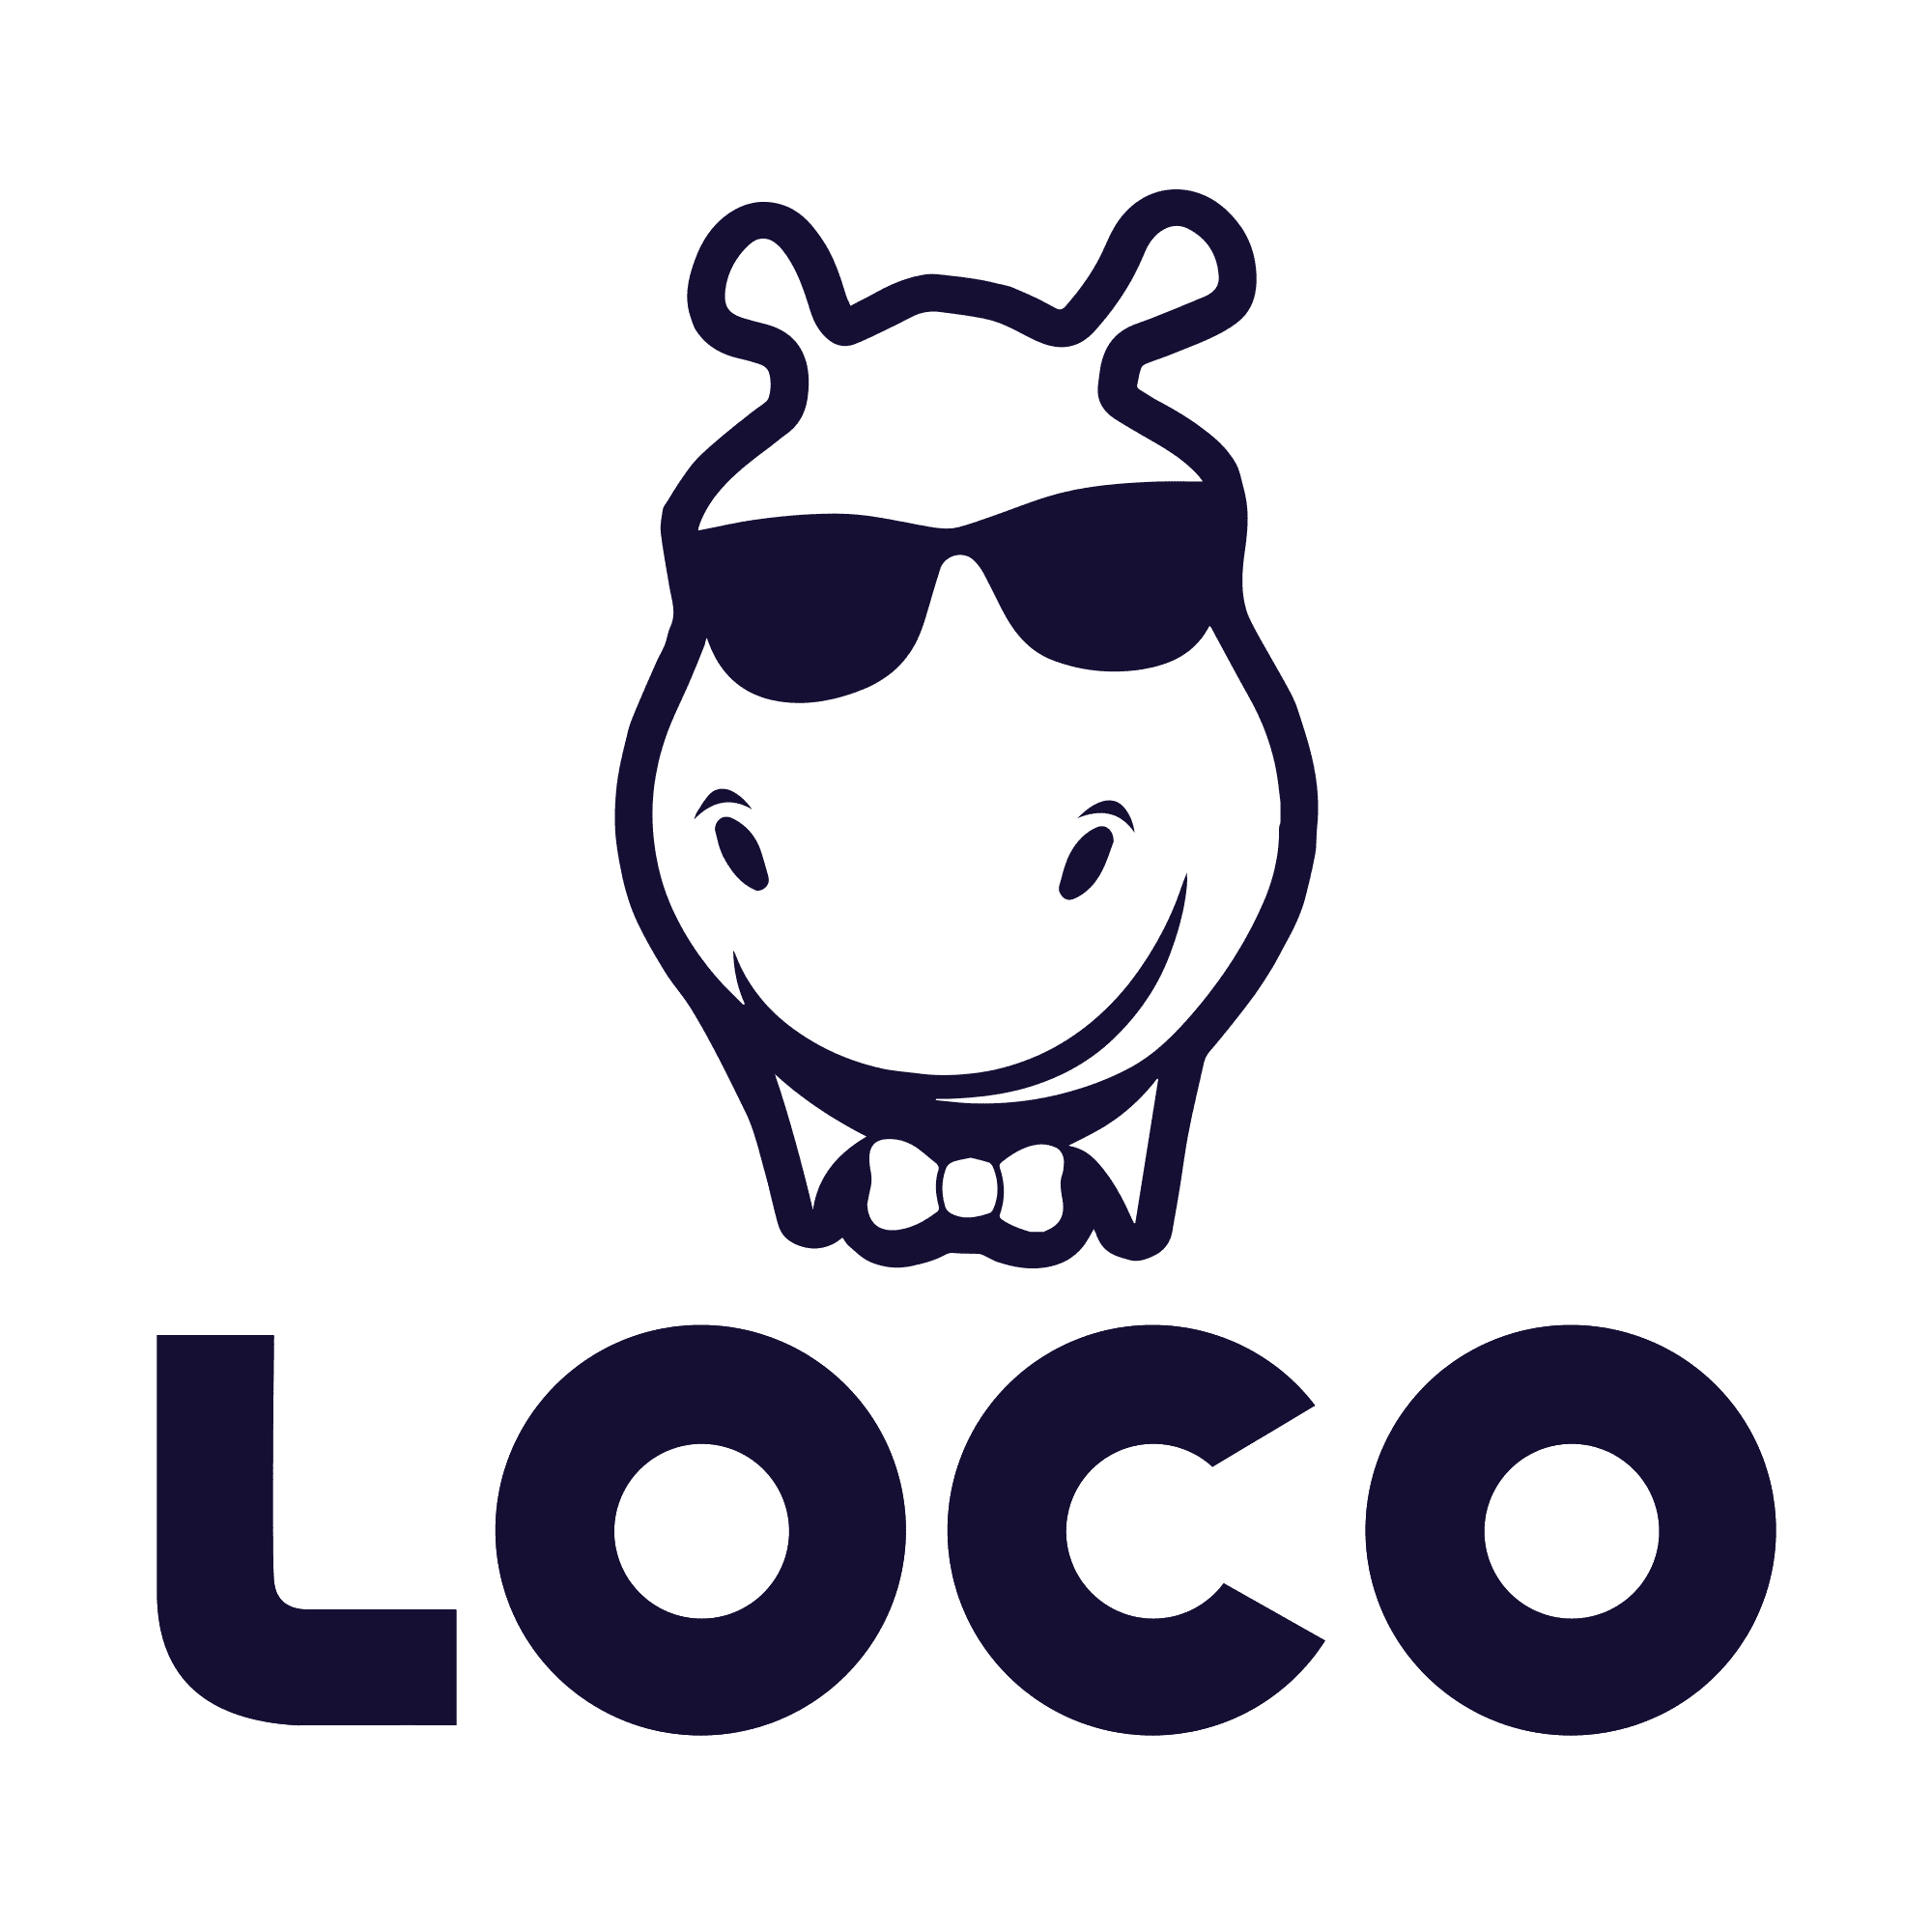 LOGO LOCO… | Tripping The Kenyans